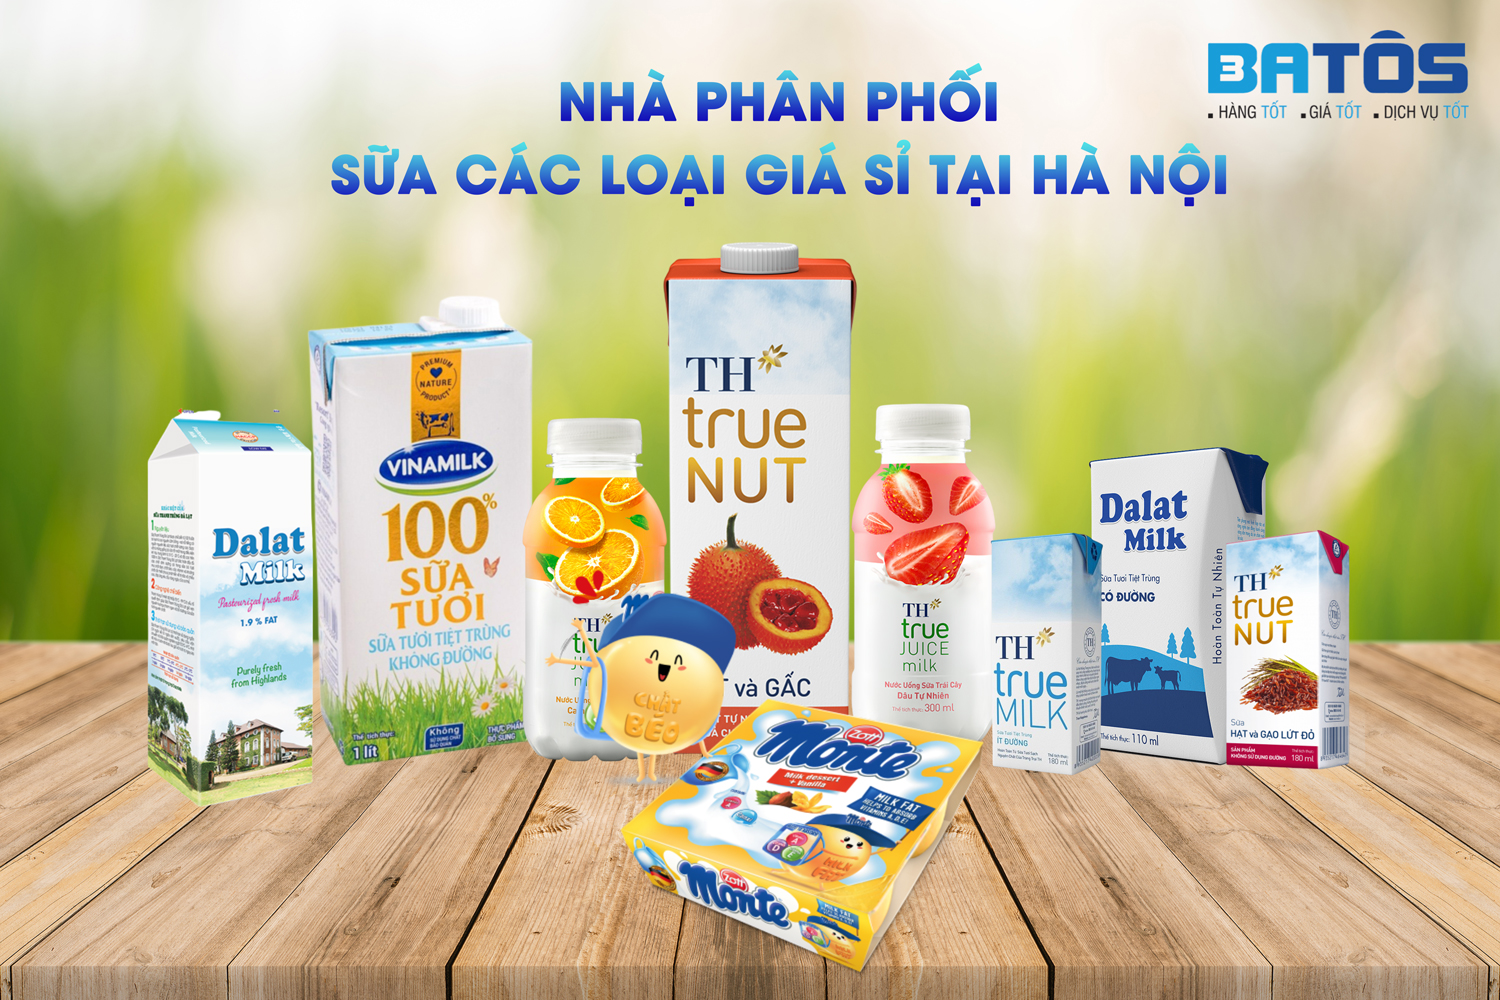 Nhà phân phối sữa các loại giá sỉ tại Hà Nội